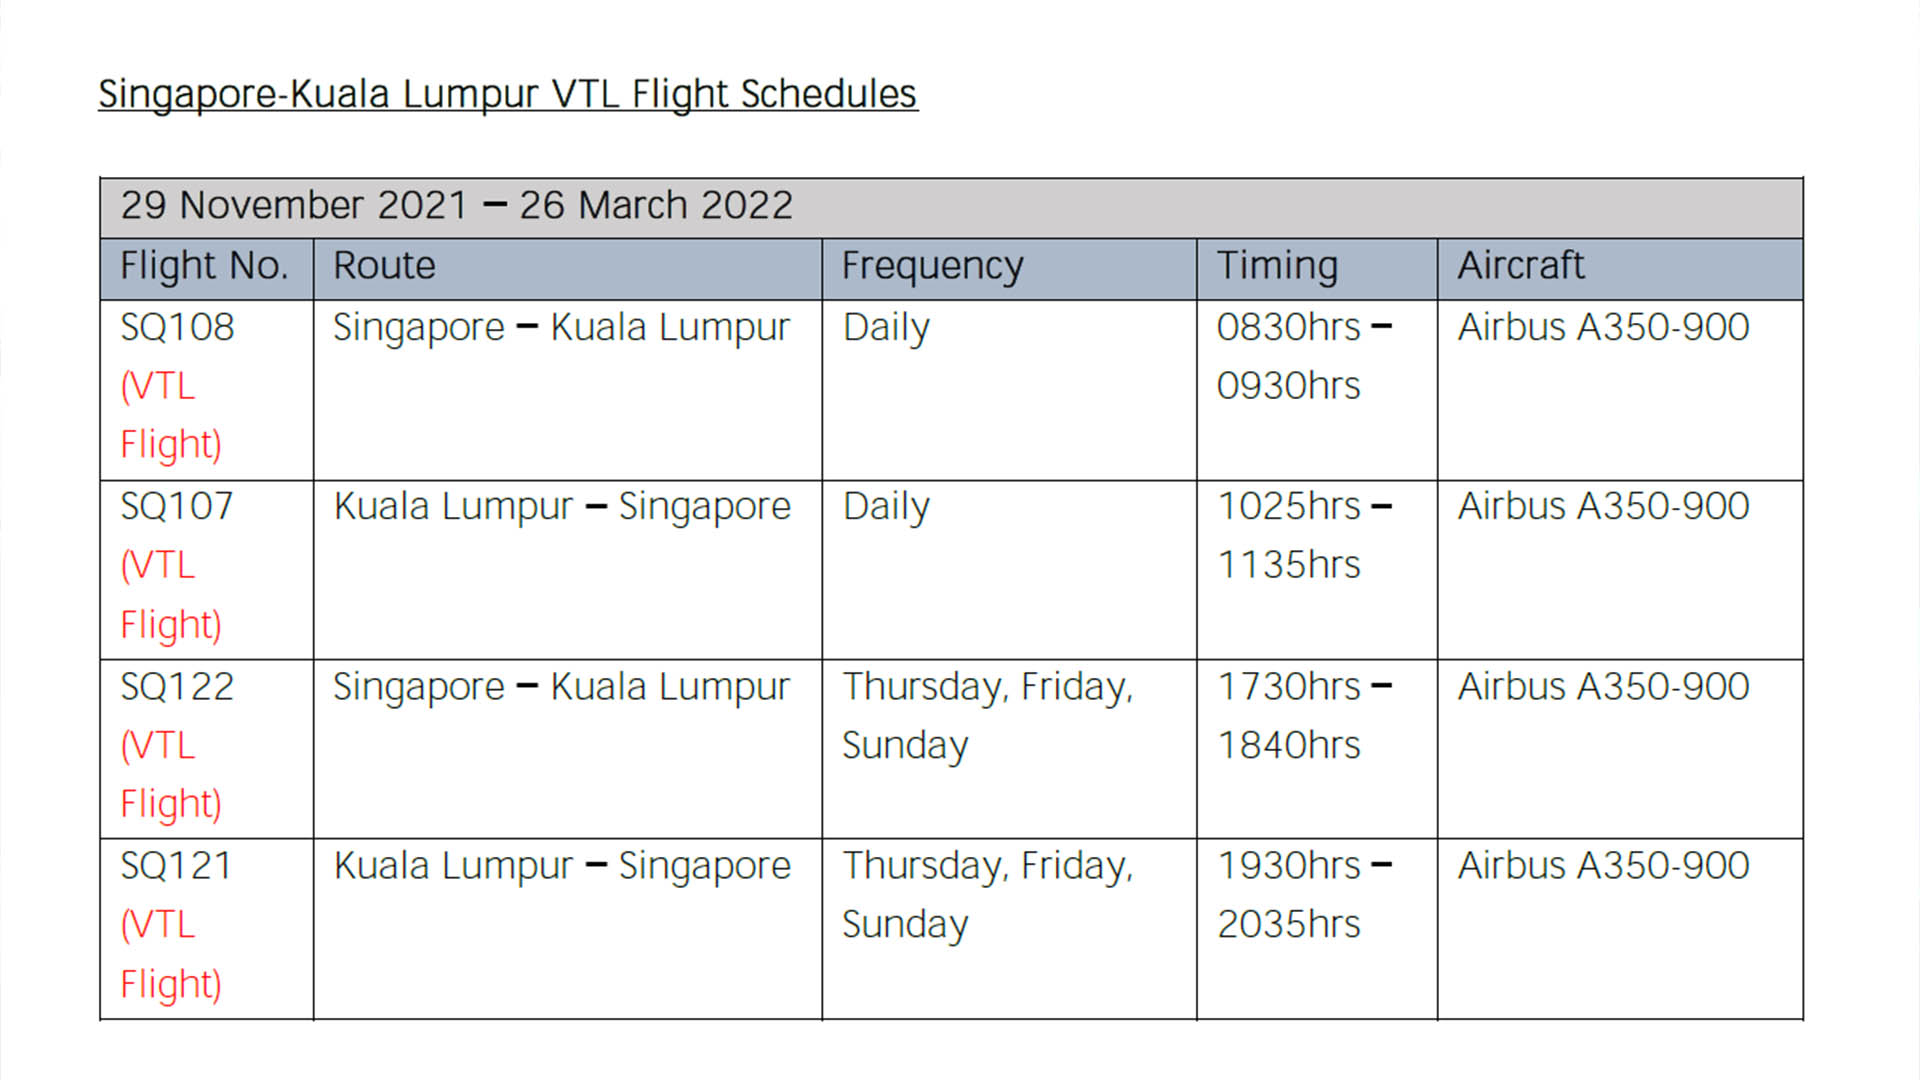 Singapore Airlines: KL VTL flights